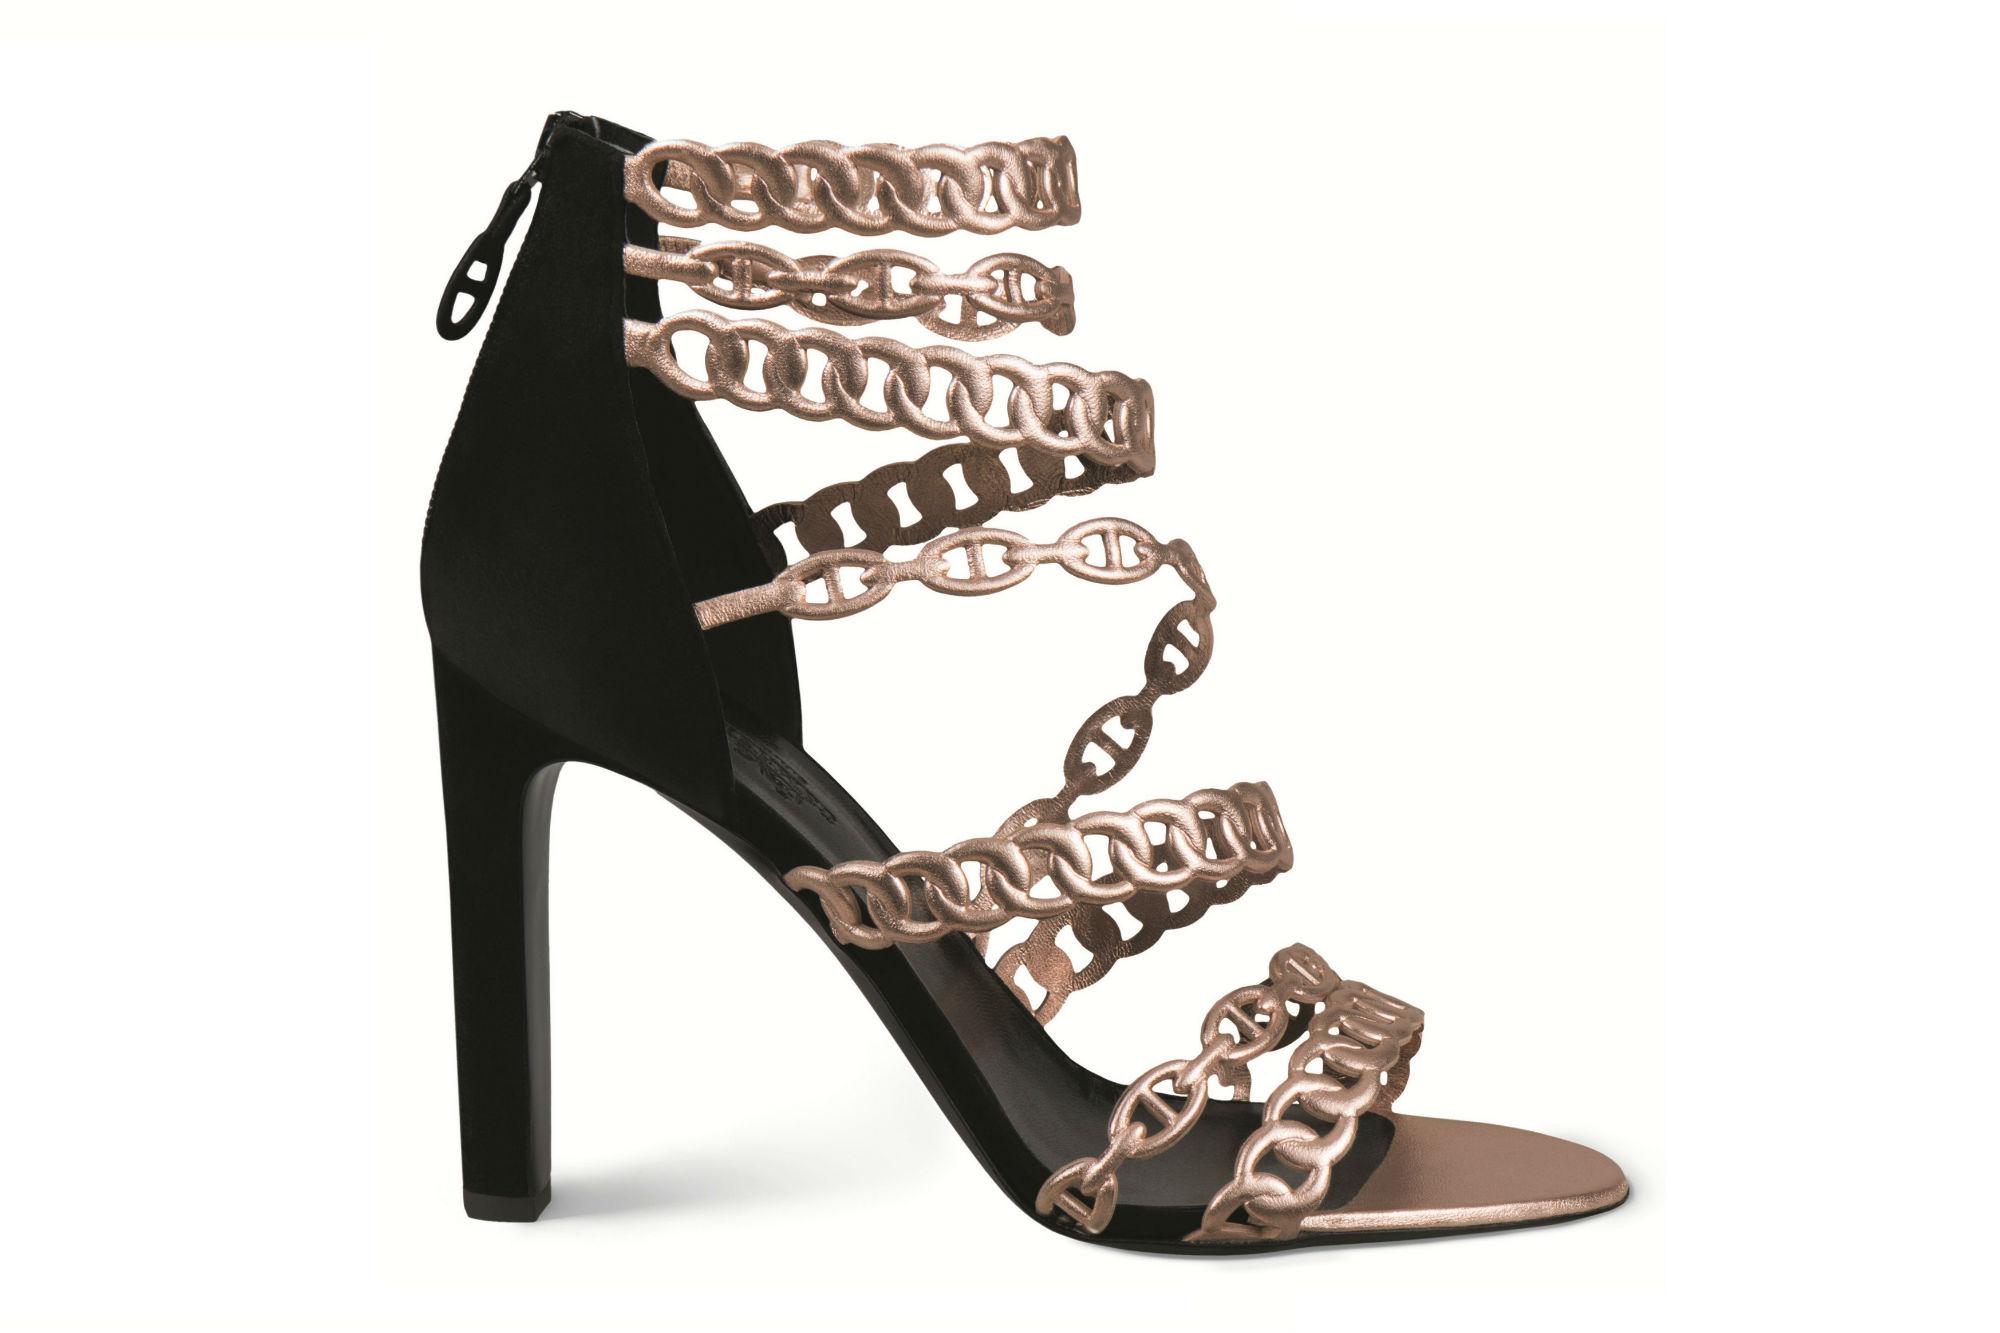 Sandali chain proposti da Hermès per Natale